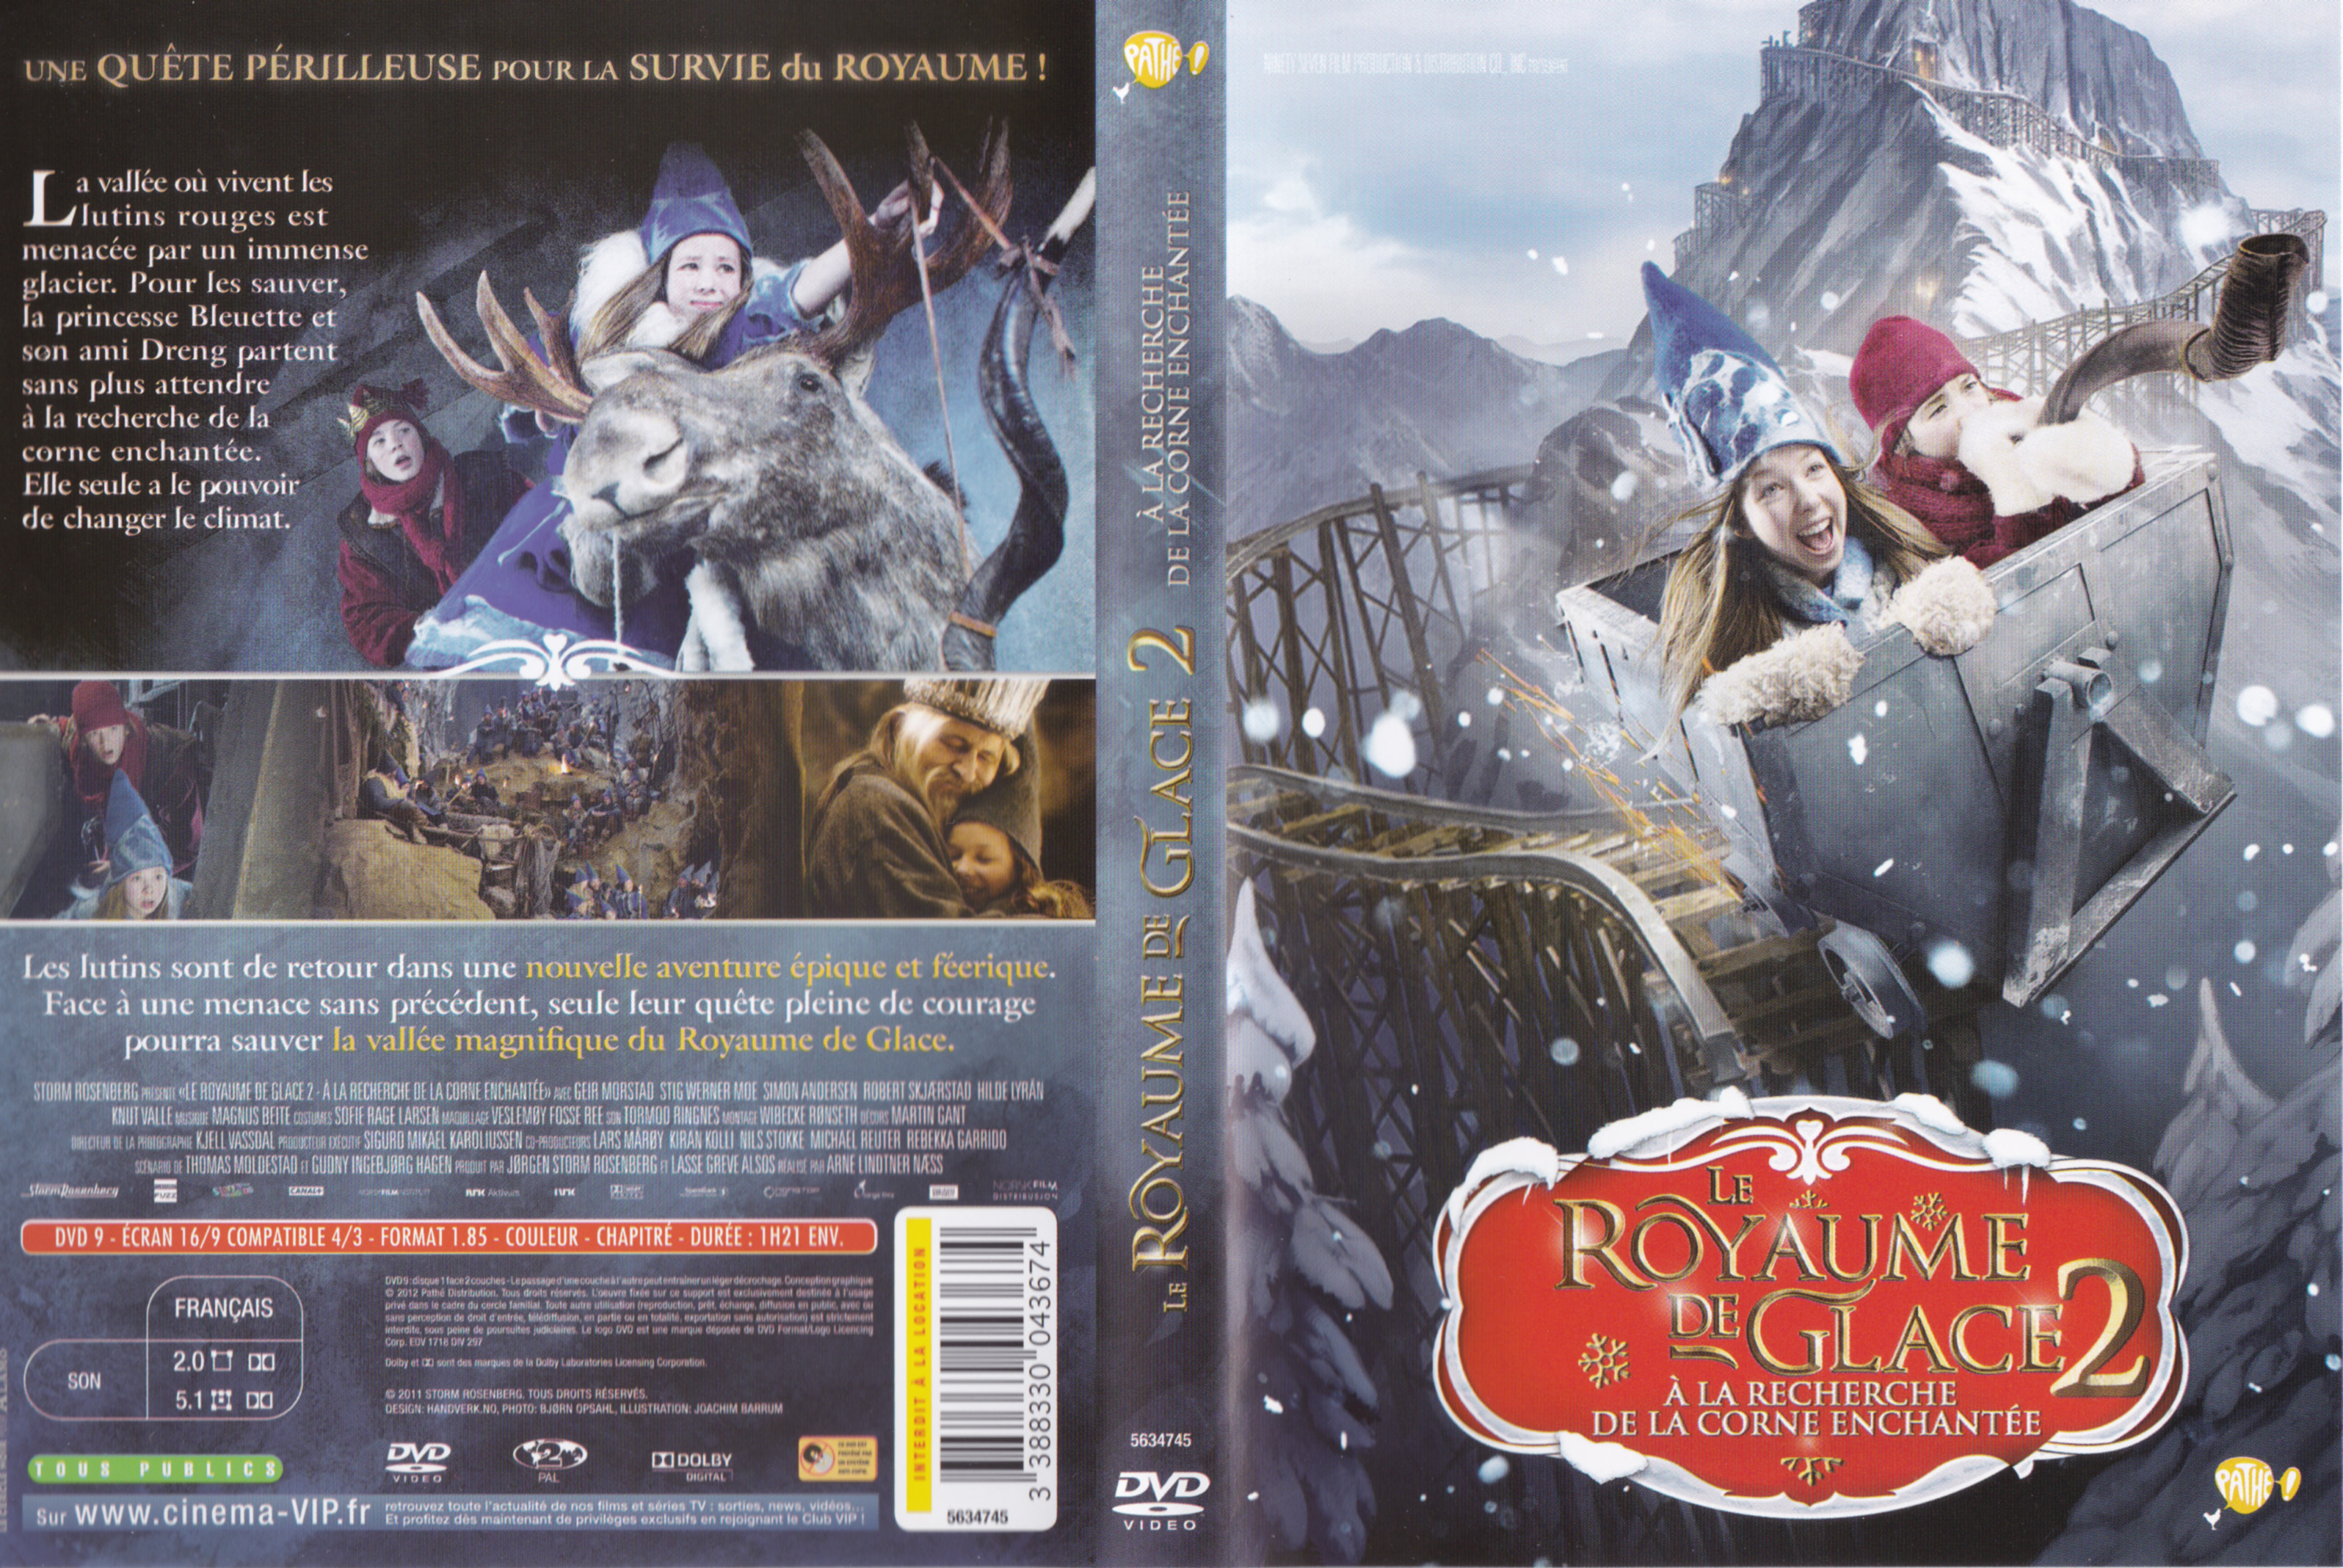 Jaquette DVD Le Royaume de glace a la recherche de la corne enchantee